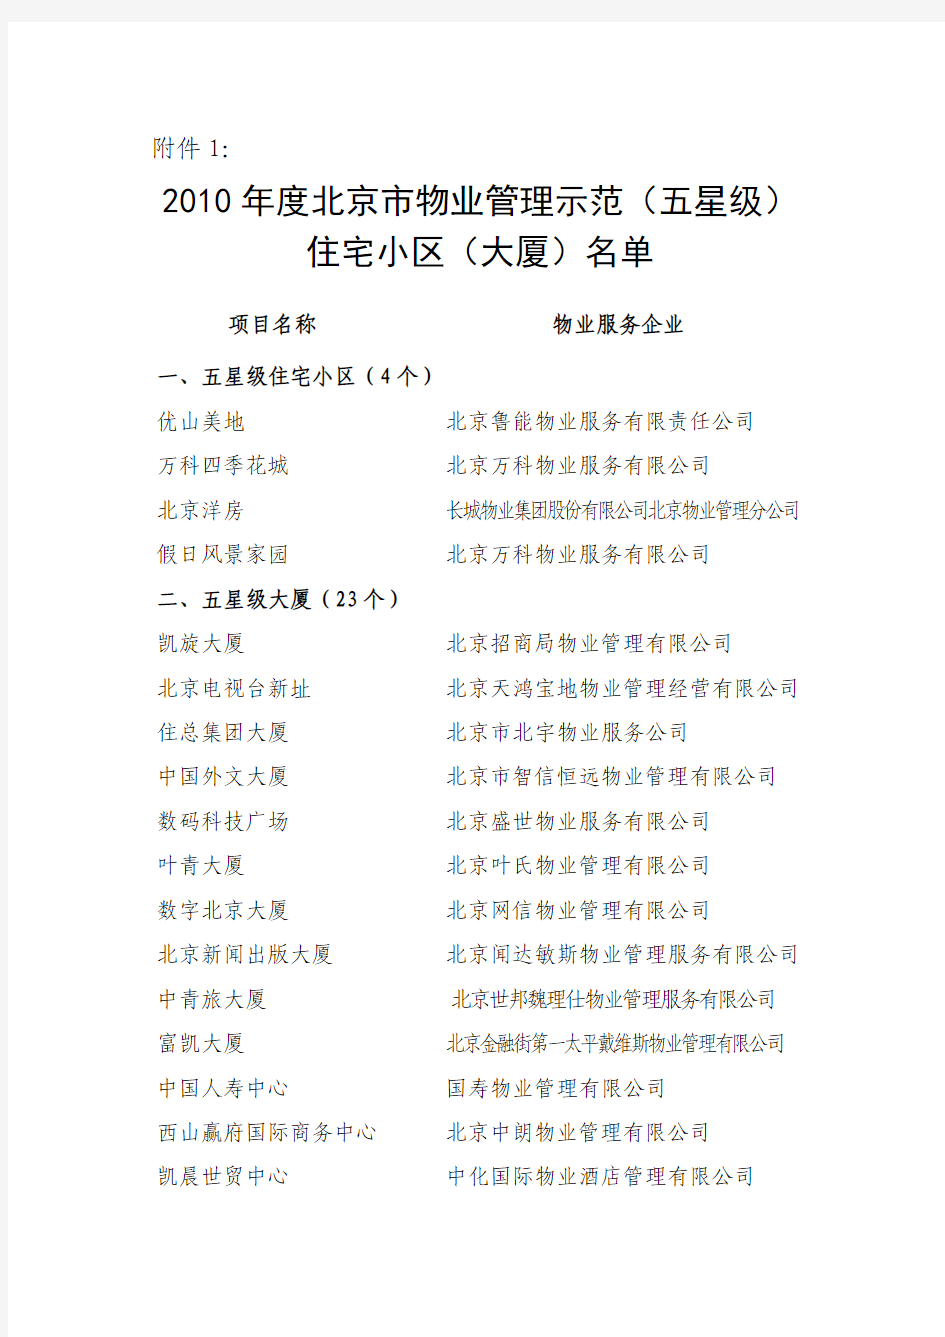 2010年度北京市物业管理示范(五星级)住宅小区(大厦)名单